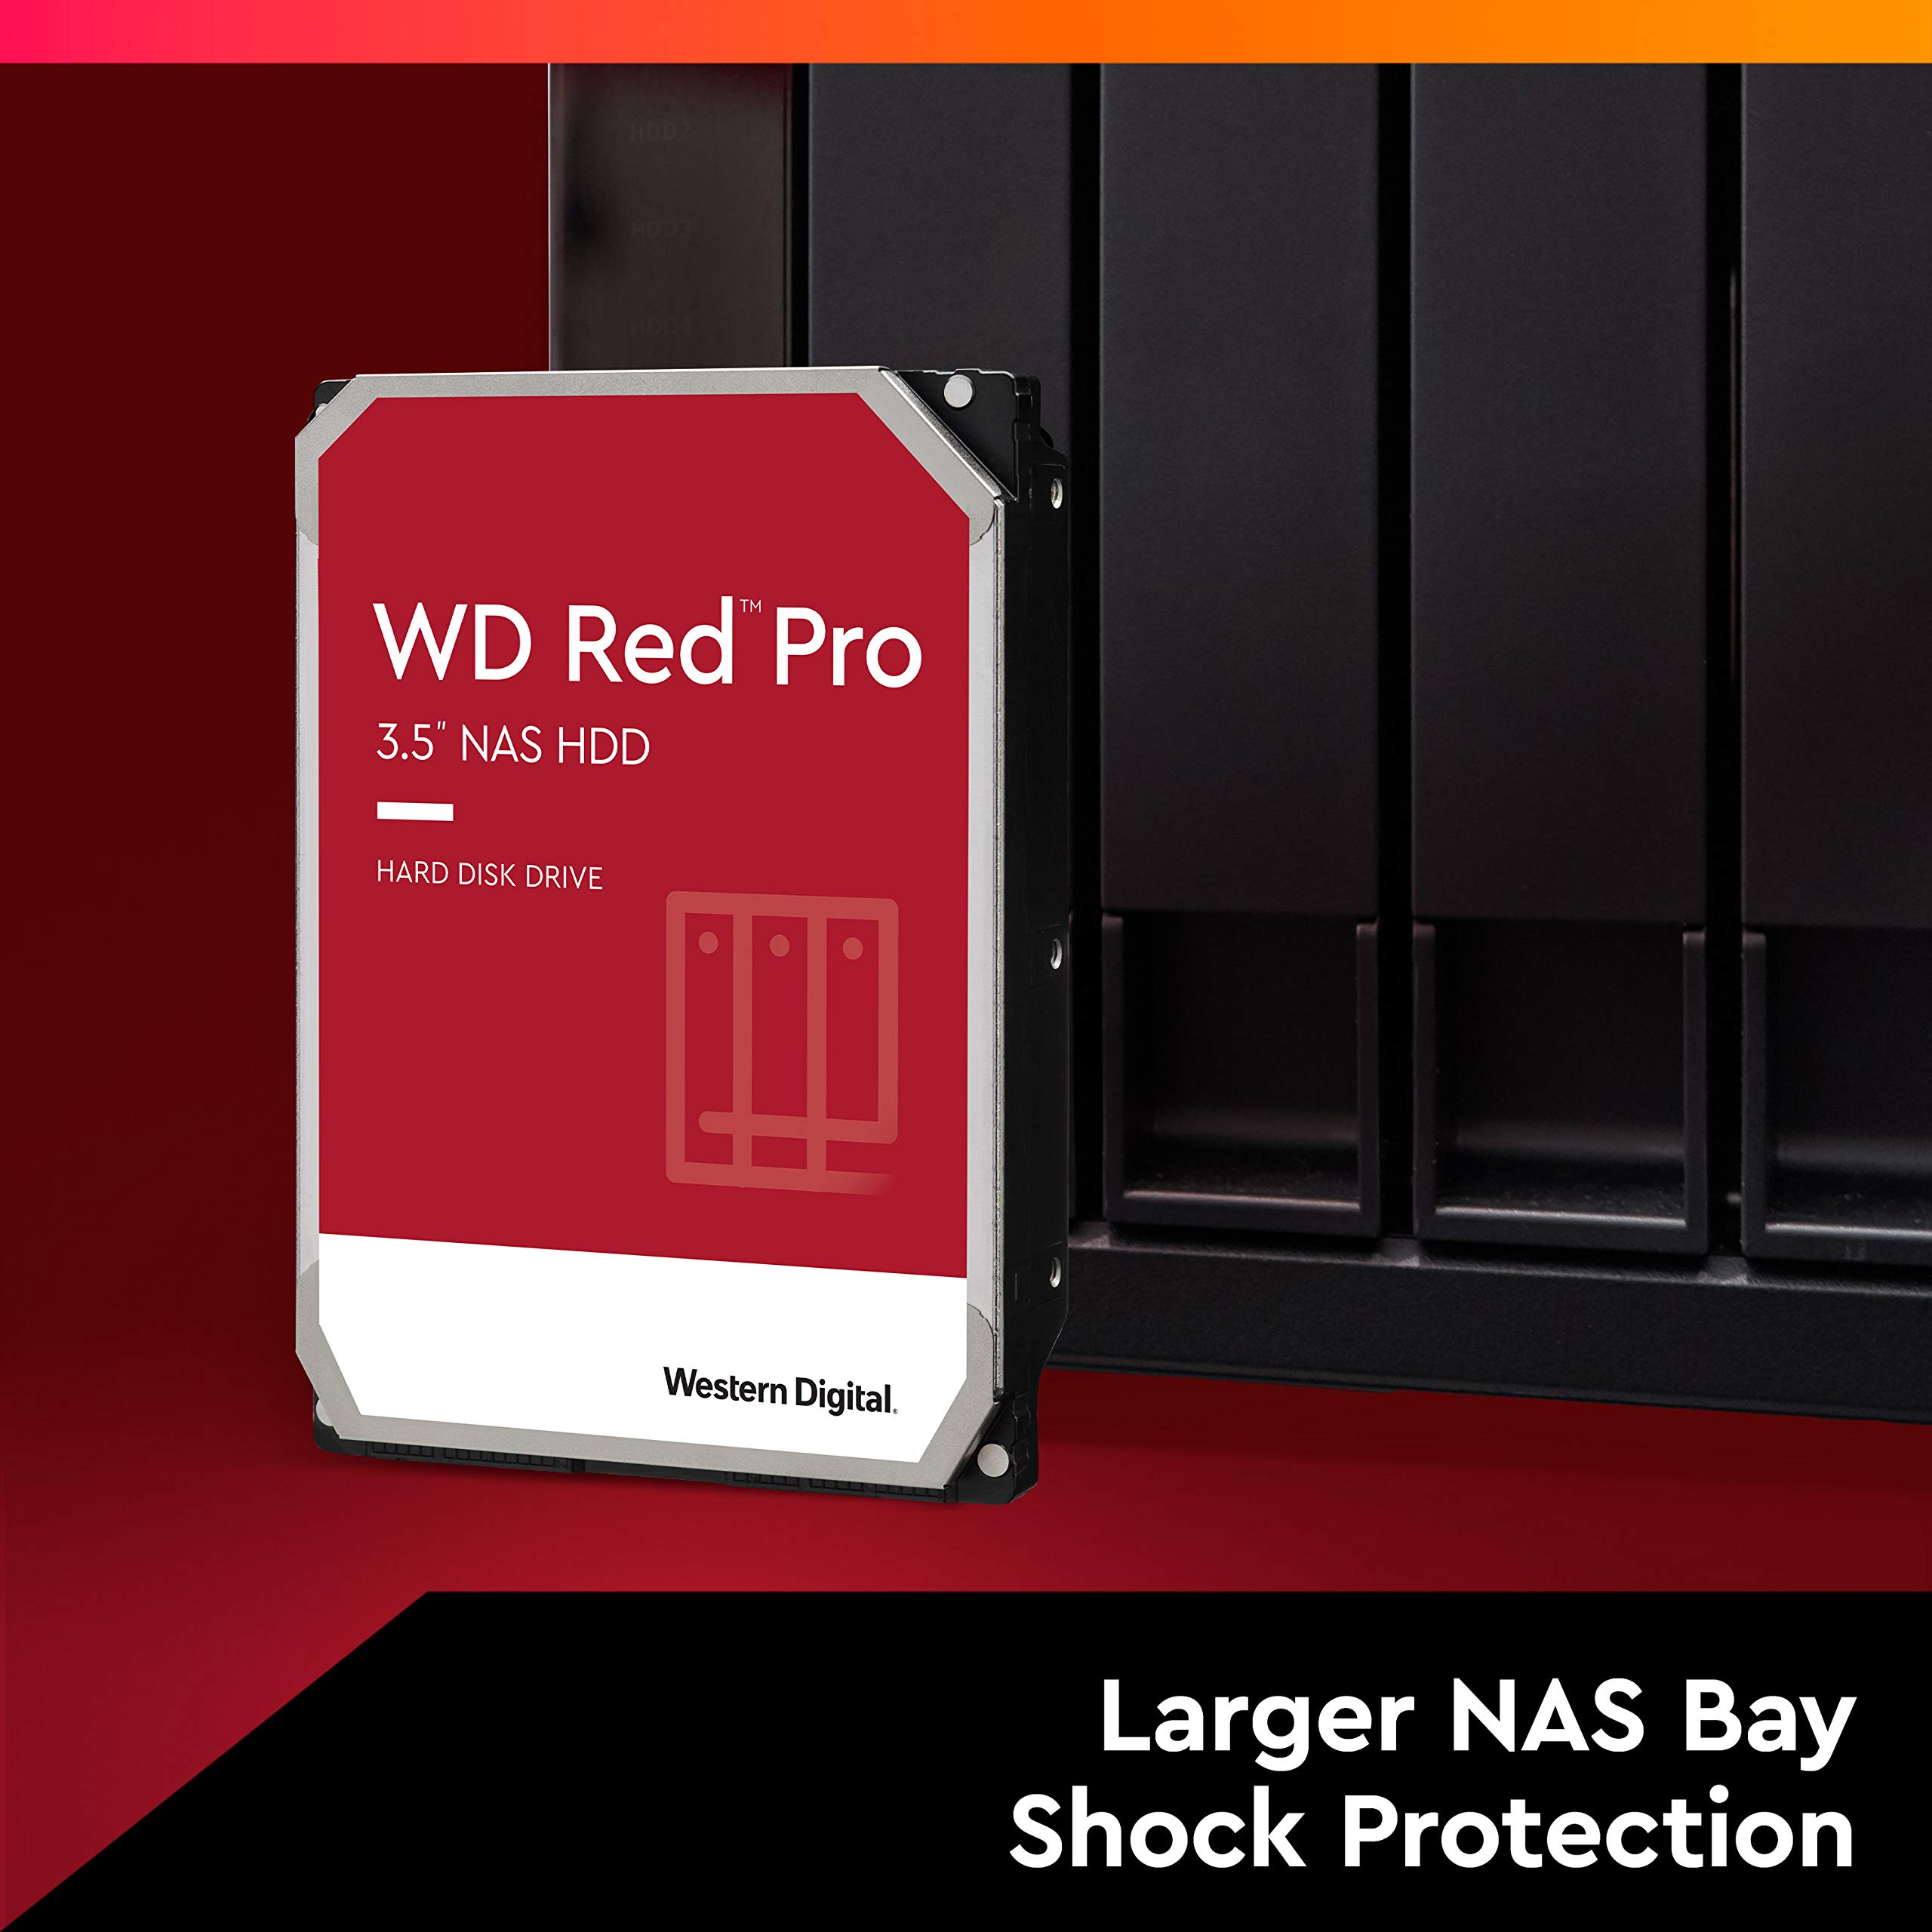 Western Digital 20TB WD Red Pro NAS Internal Hard Drive HDD - 7200 RPM, SATA 6 Gb/s, CMR, 512 MB Cache, 3.5